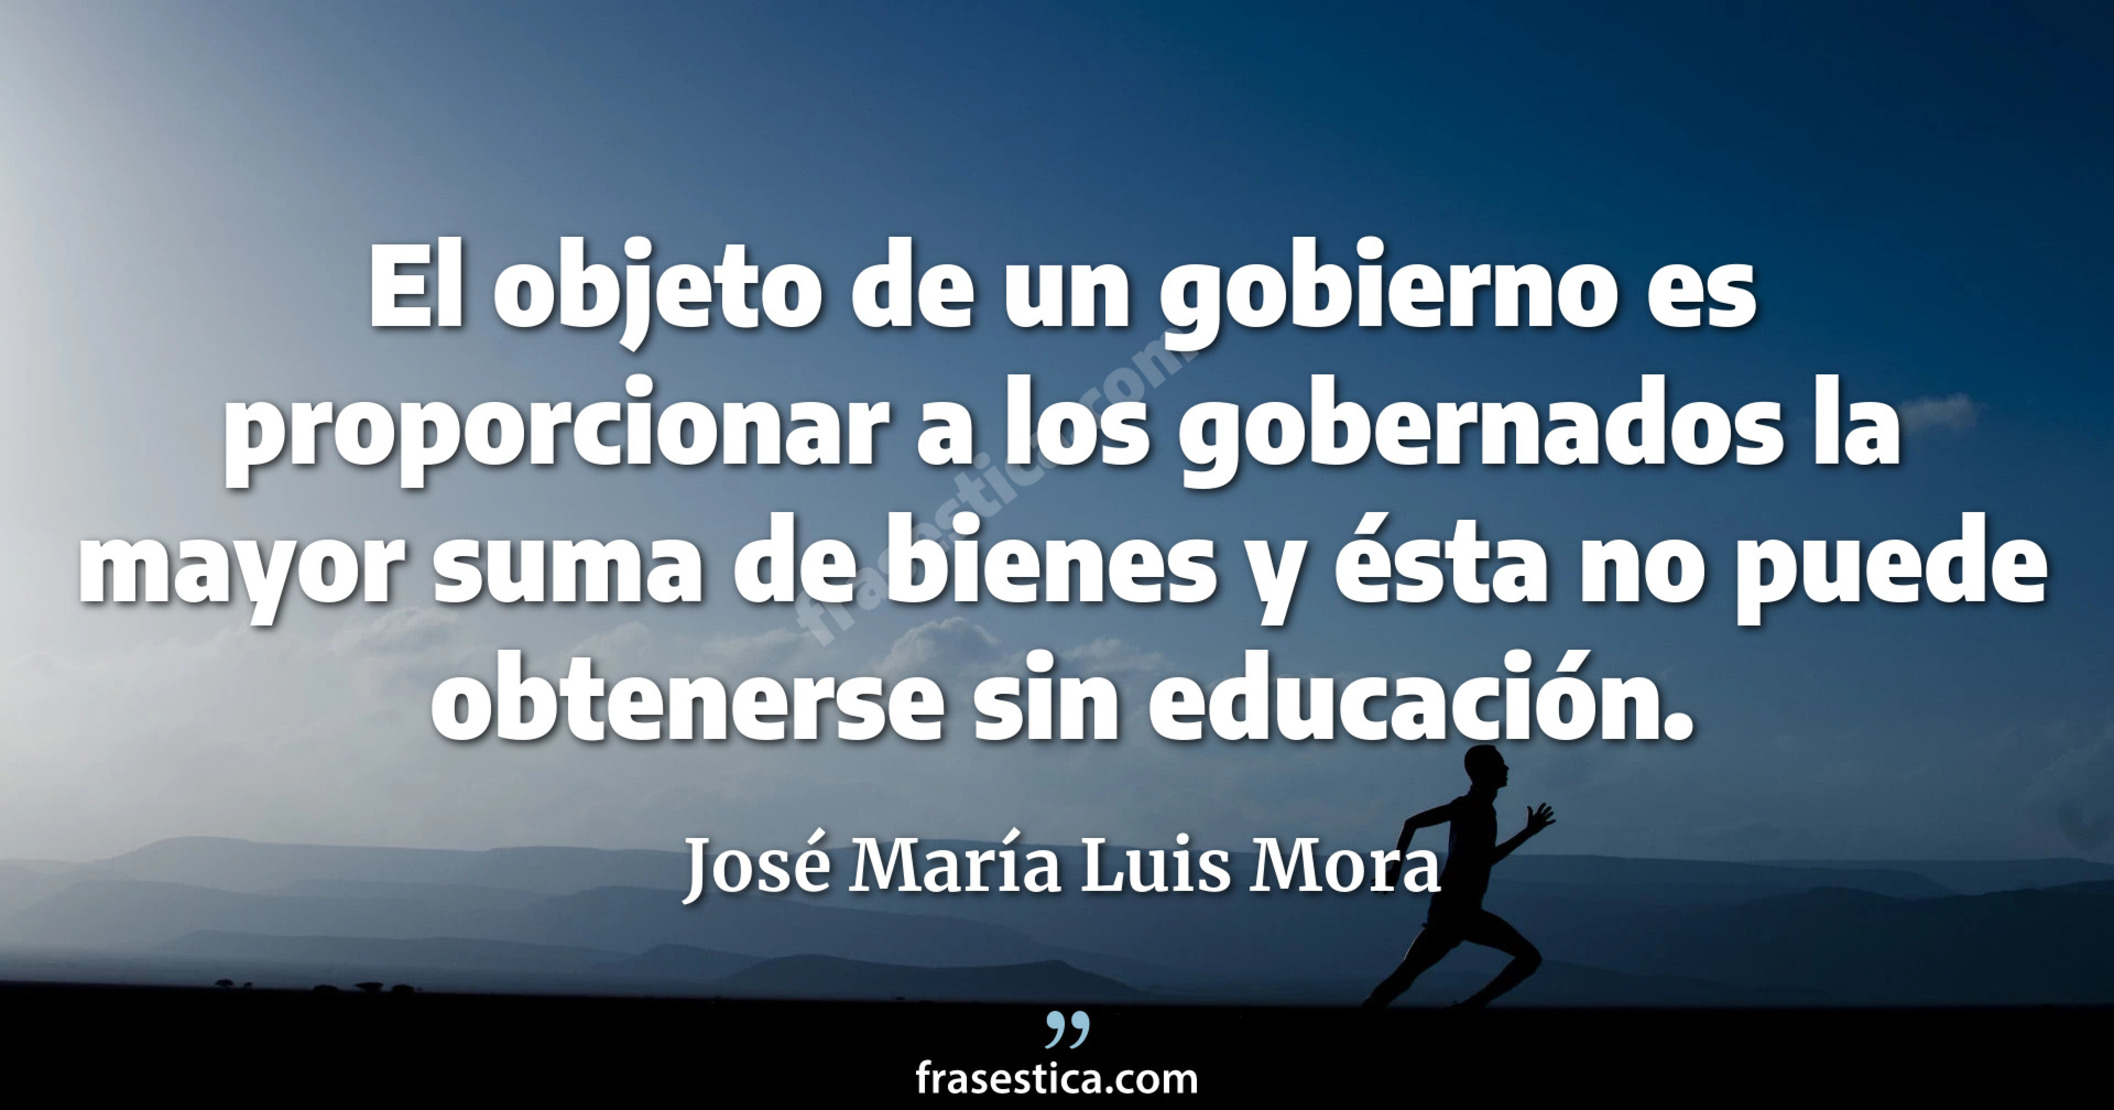 El objeto de un gobierno es proporcionar a los gobernados la mayor suma de bienes y ésta no puede obtenerse sin educación. - José María Luis Mora